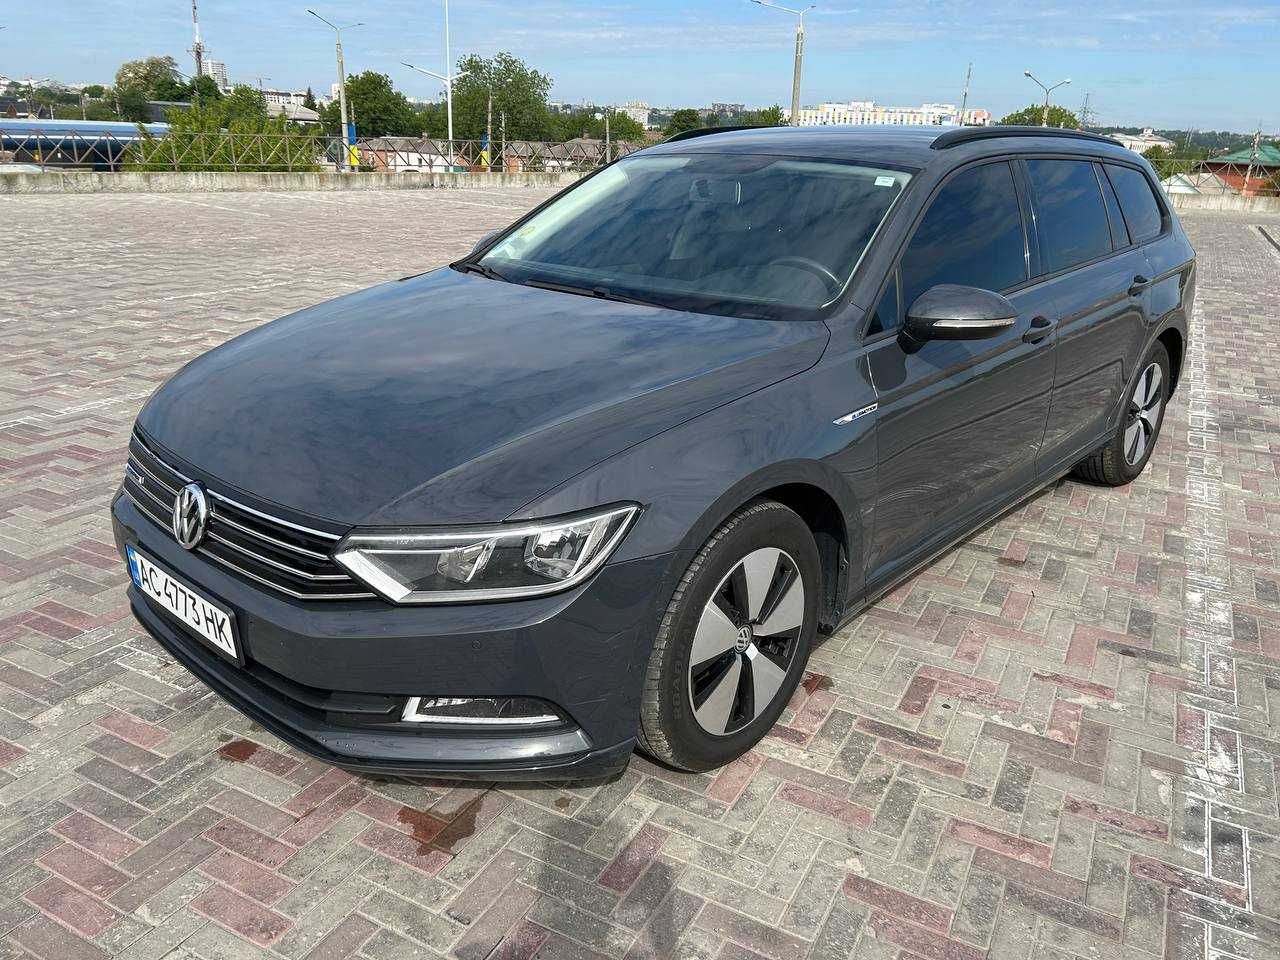 Volkswagen Passat 2016